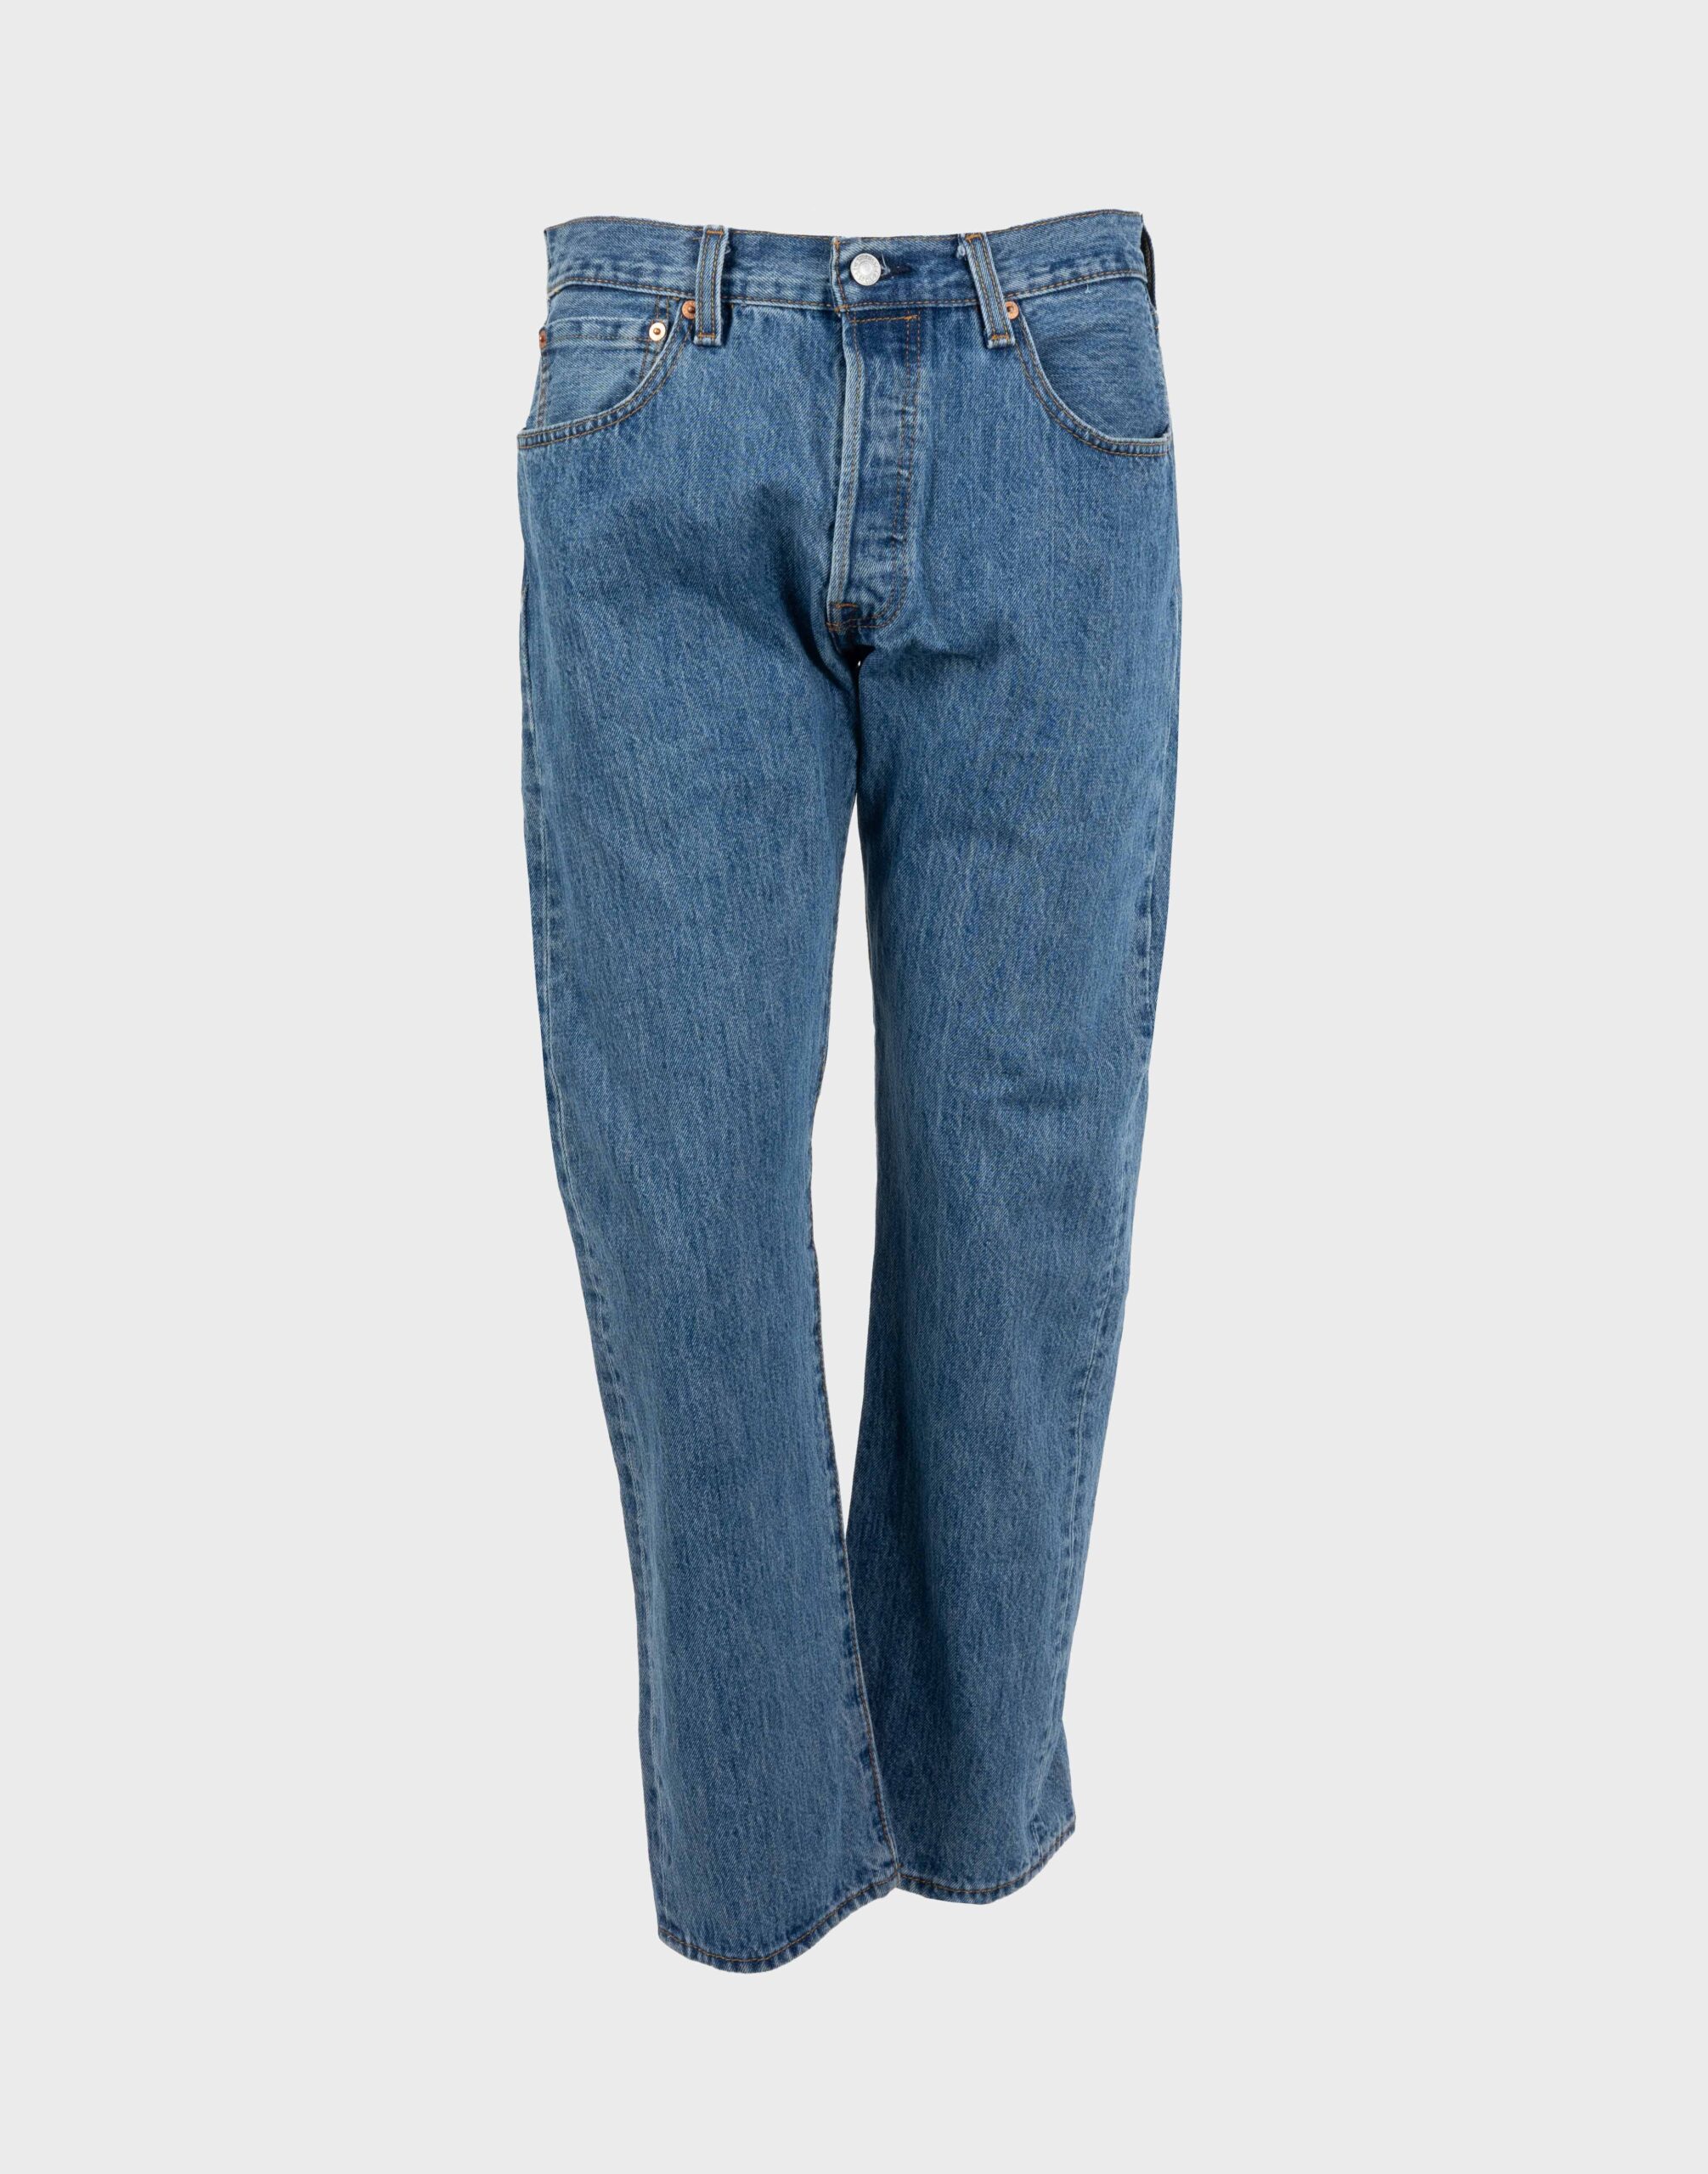 levis jeans trousers medium wash model 501